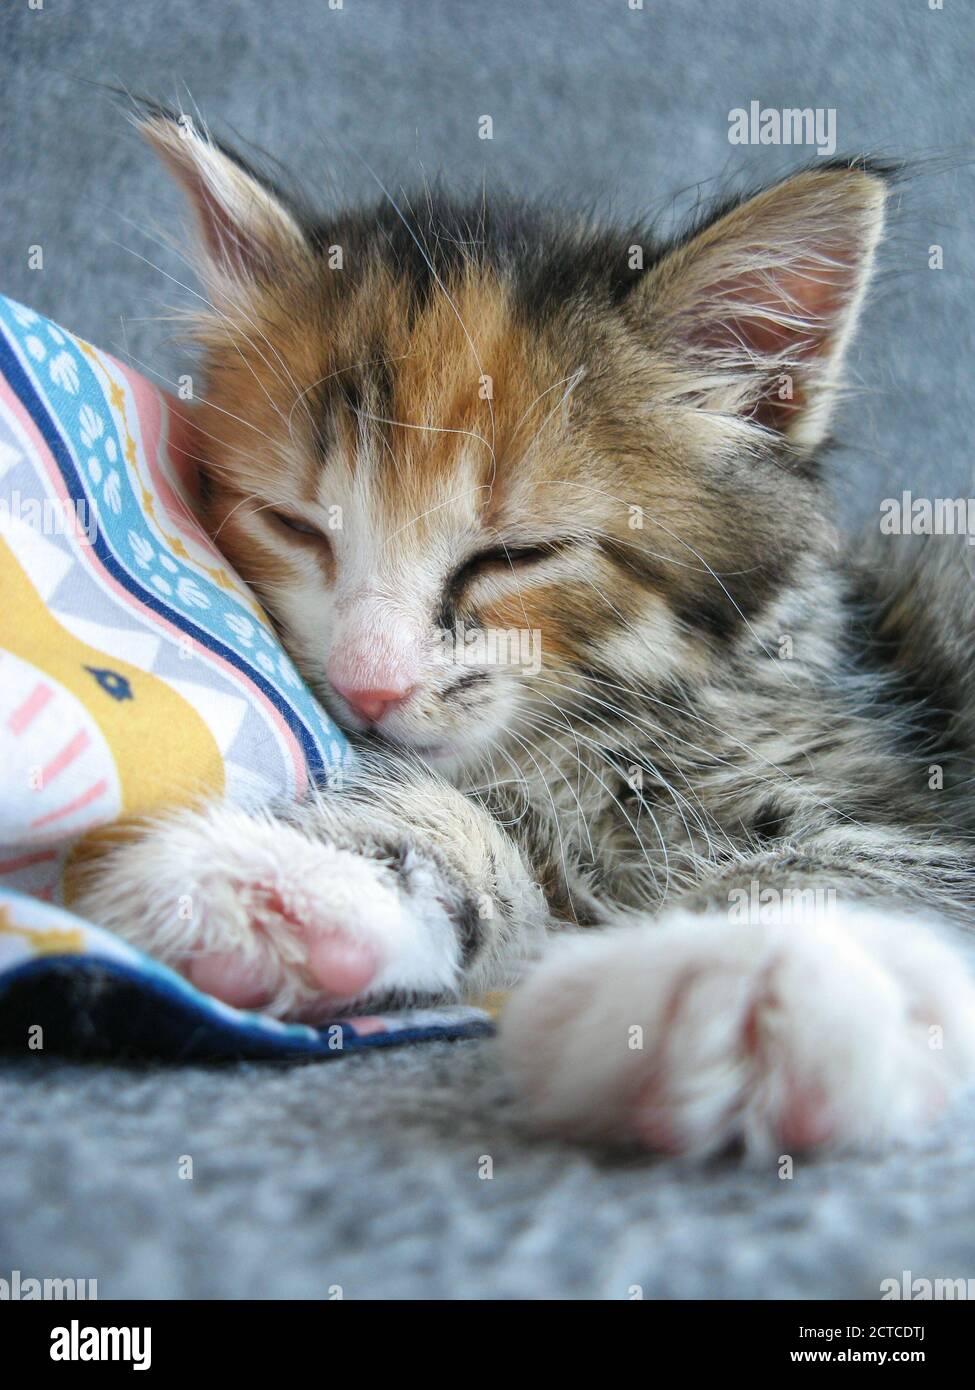 Adorable chaton adopté de 8 semaines dormant. Gros plan sur un petit chat féminin moelleux. Calico ou torbie (tabby de tortoiseshell). Banque D'Images